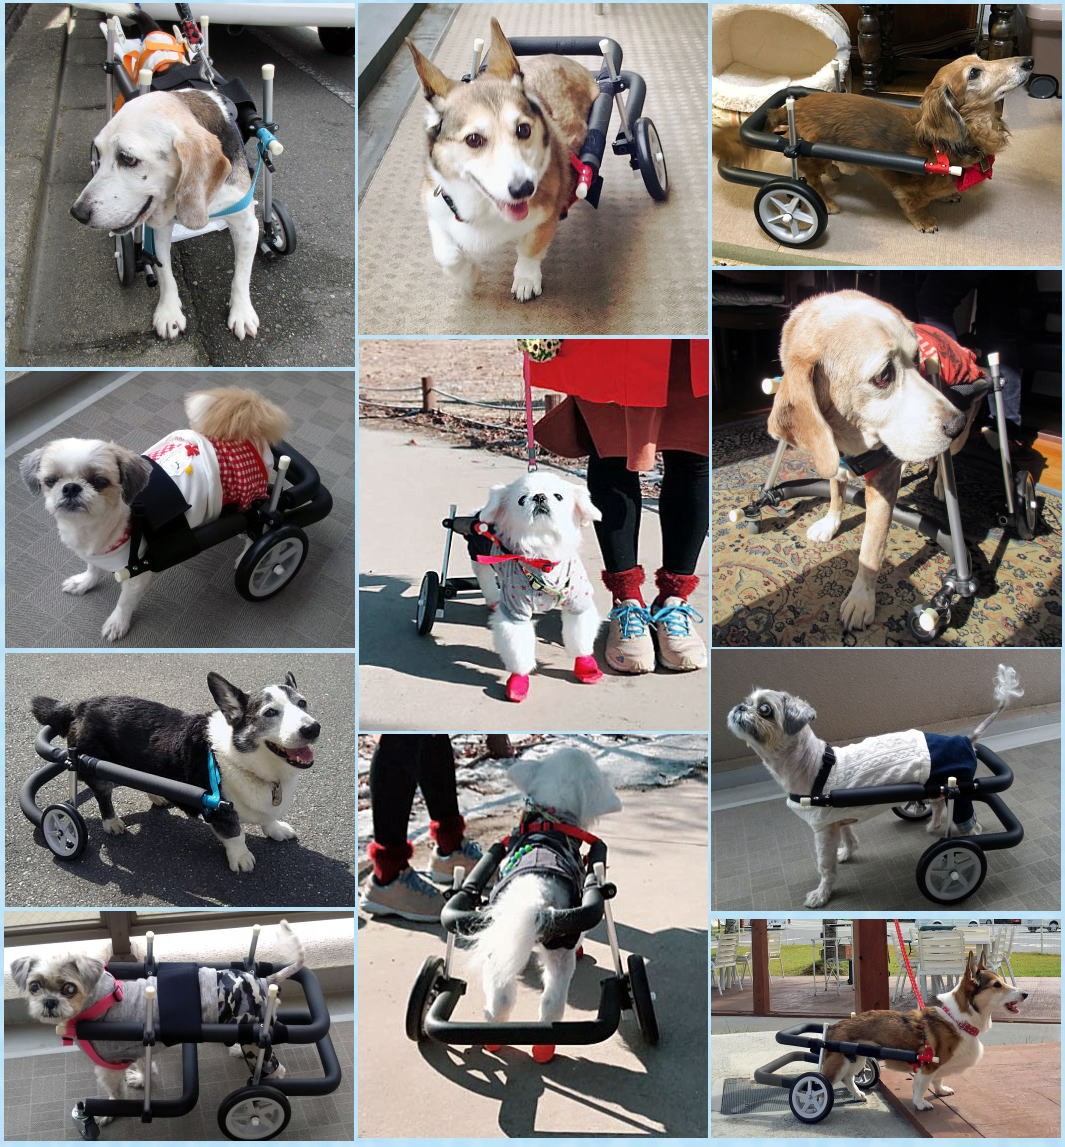 犬用車椅子 歩行器 中型犬用 オーダーメイド 2輪 室内 歩行補助 老犬 